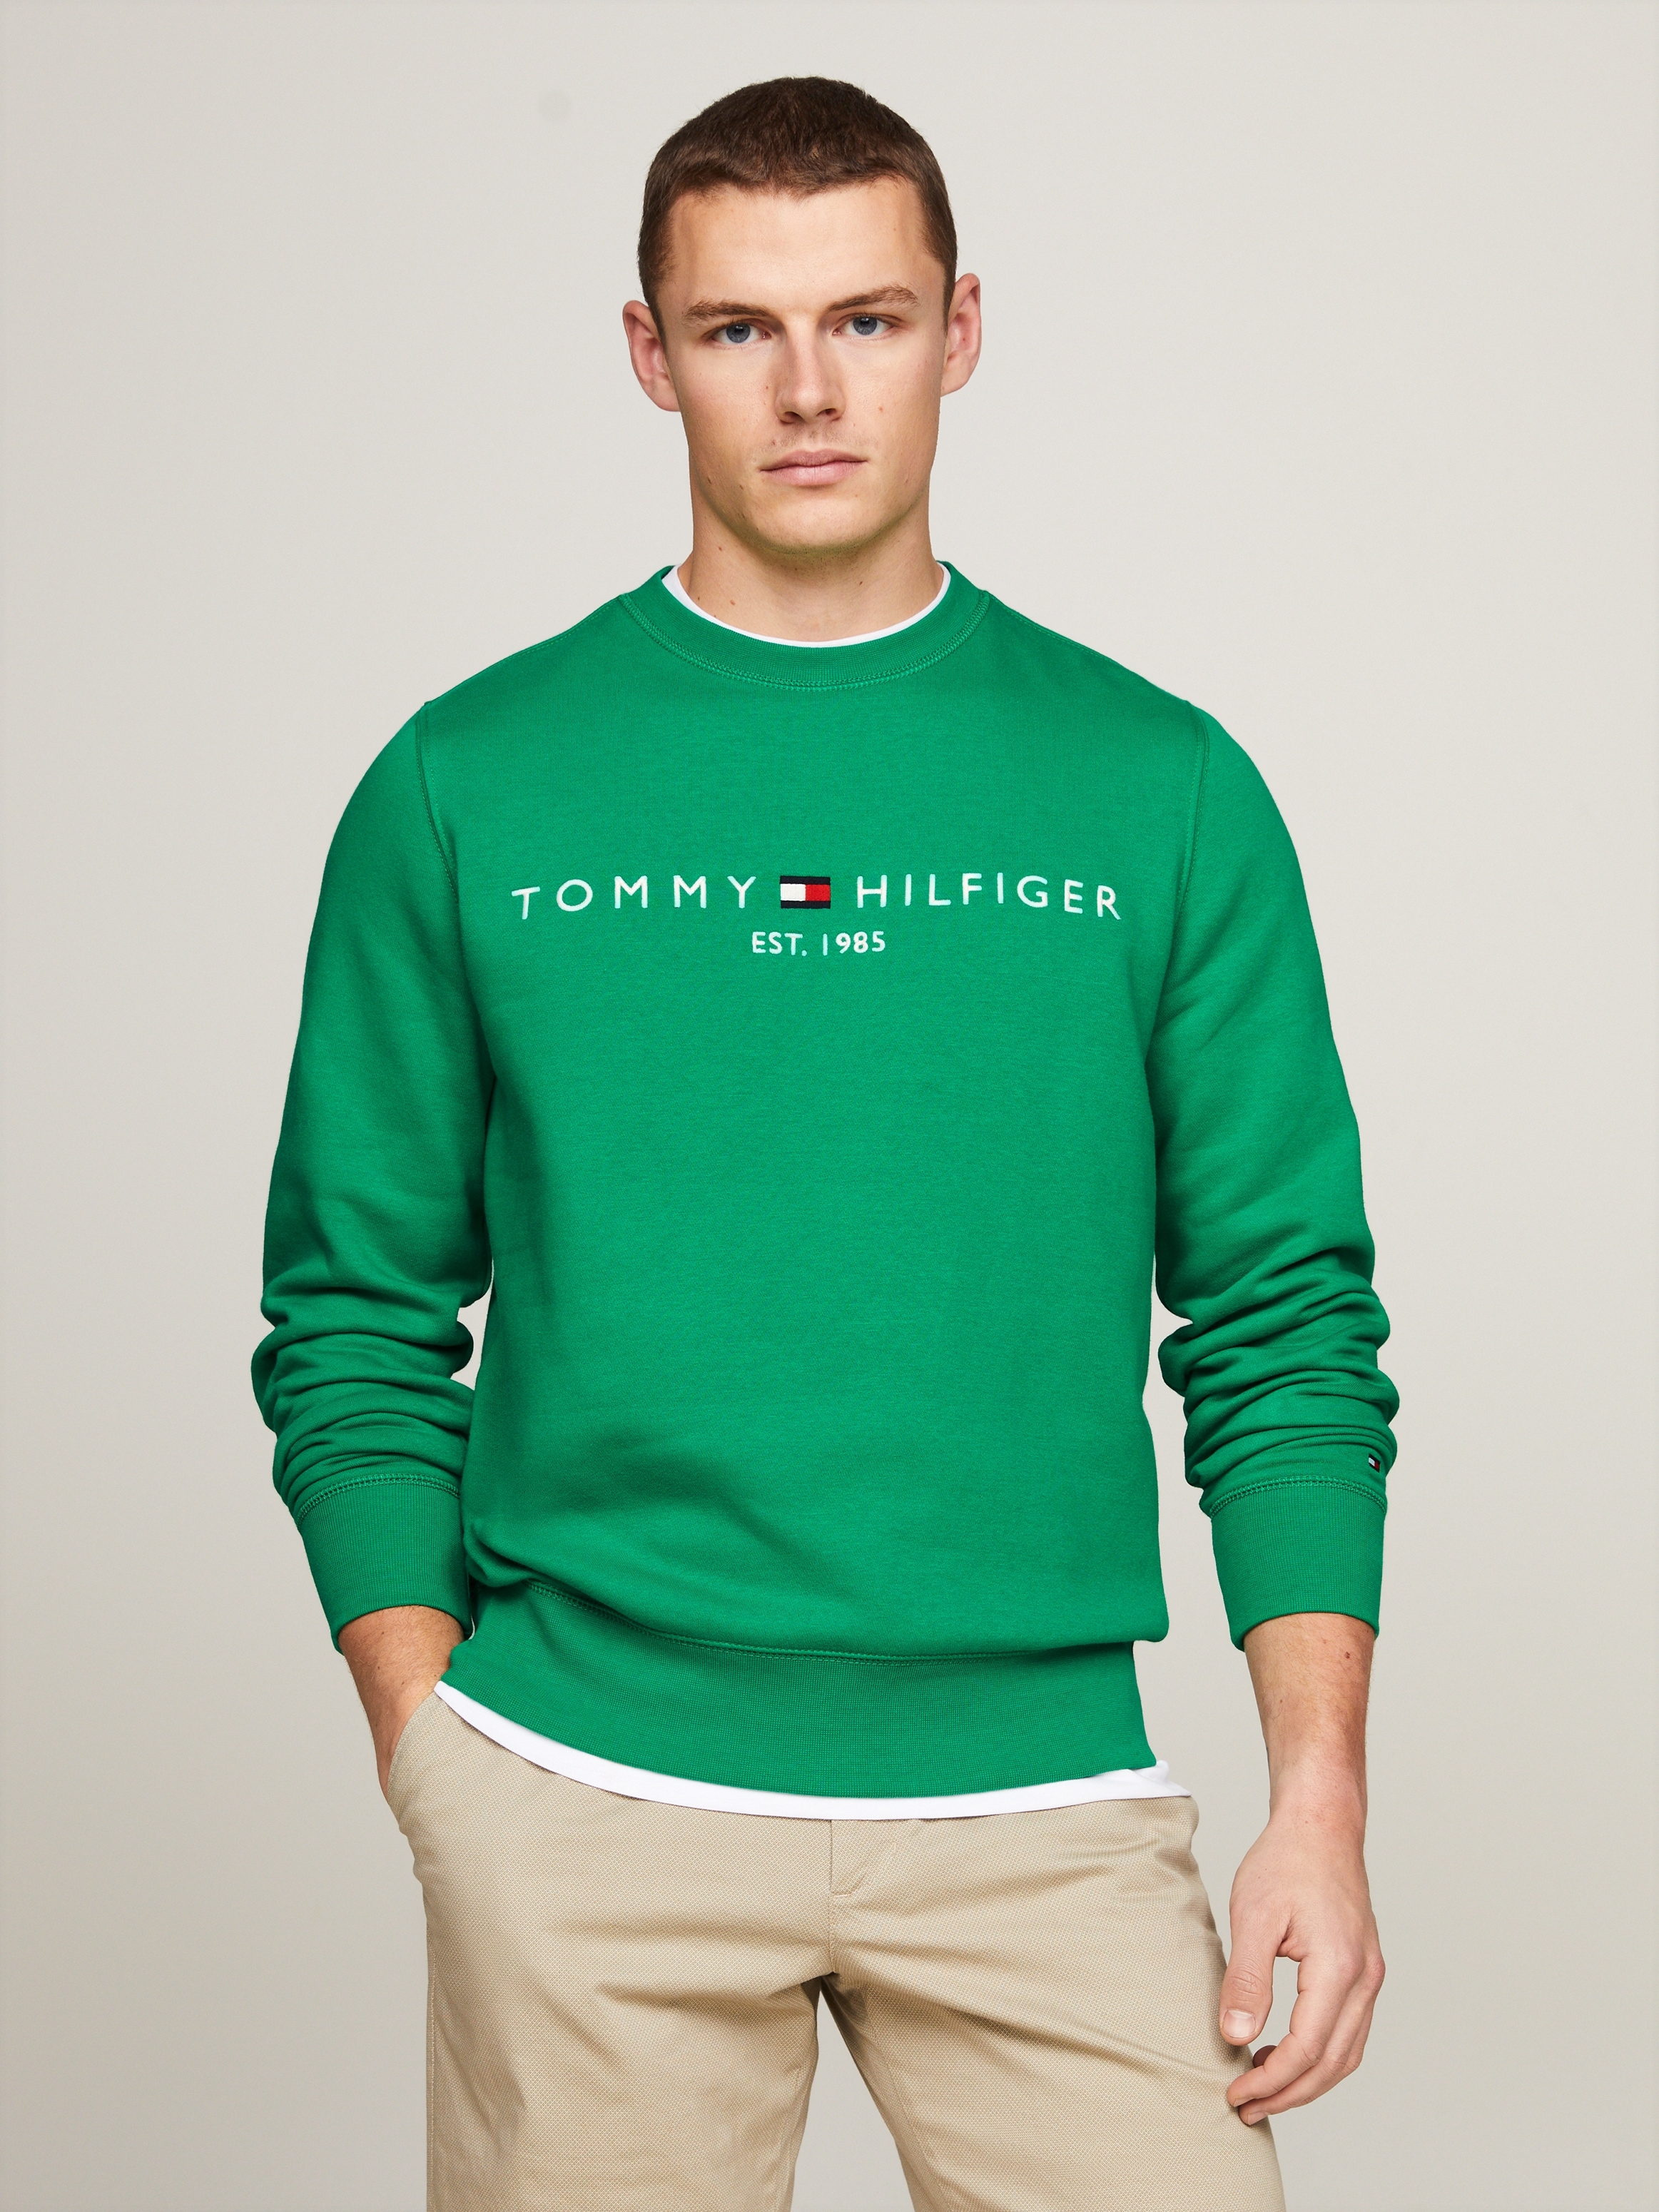 Hilfiger SWEATSHIRT«, »TOMMY OTTO kaufen LOGO Rundhalsausschnitt Tommy bei Sweatshirt mit online